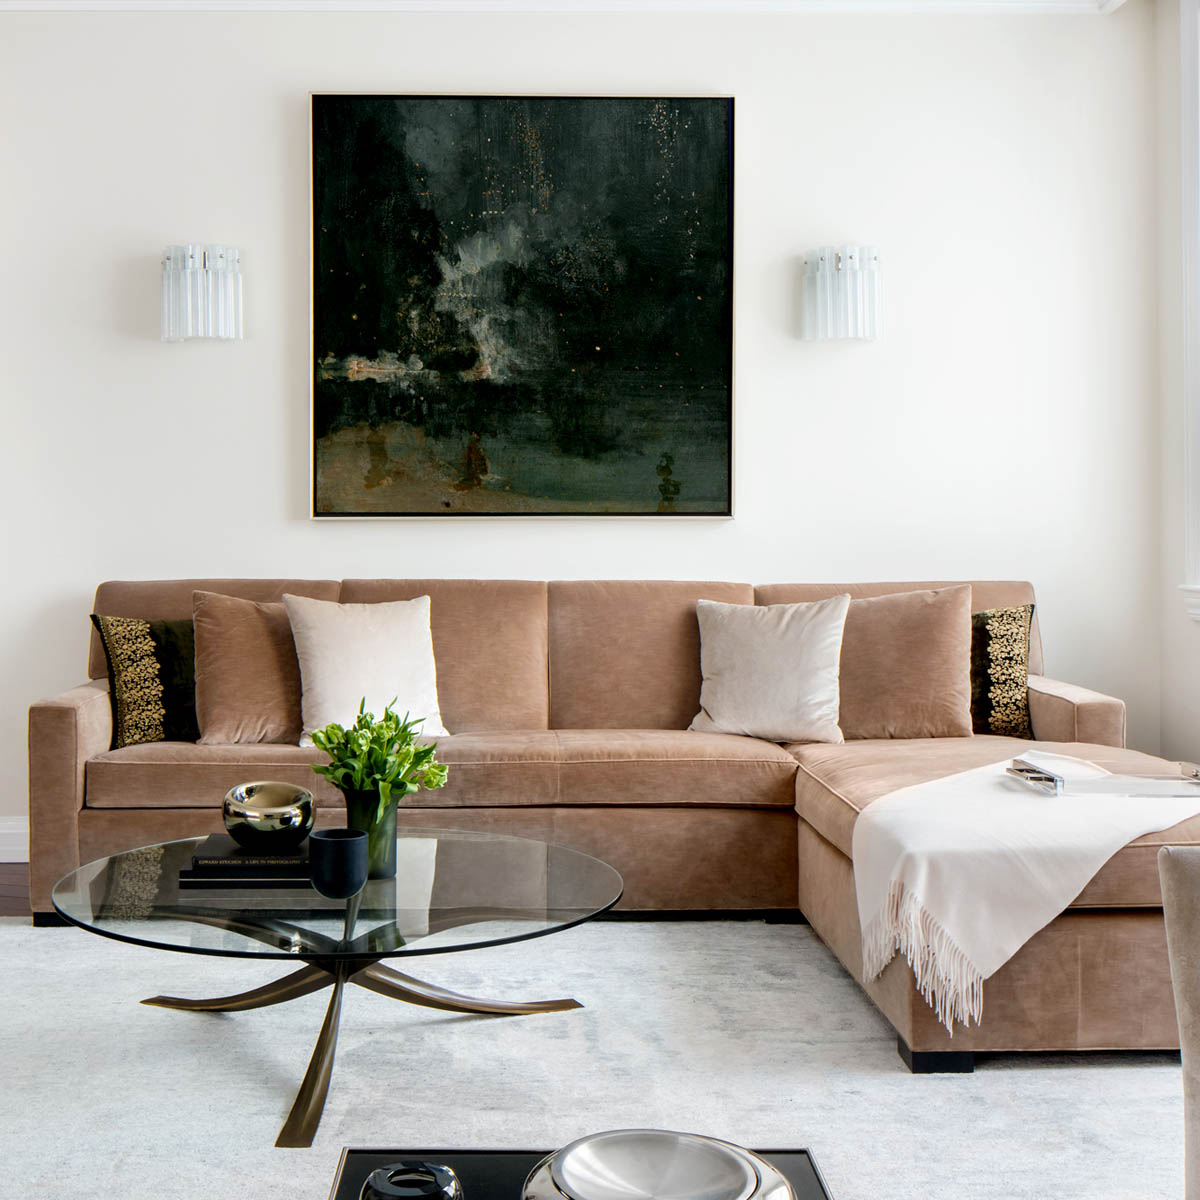 nyc_interior_designer_erika_flugger_broadway_landmark_luxury_penthouse